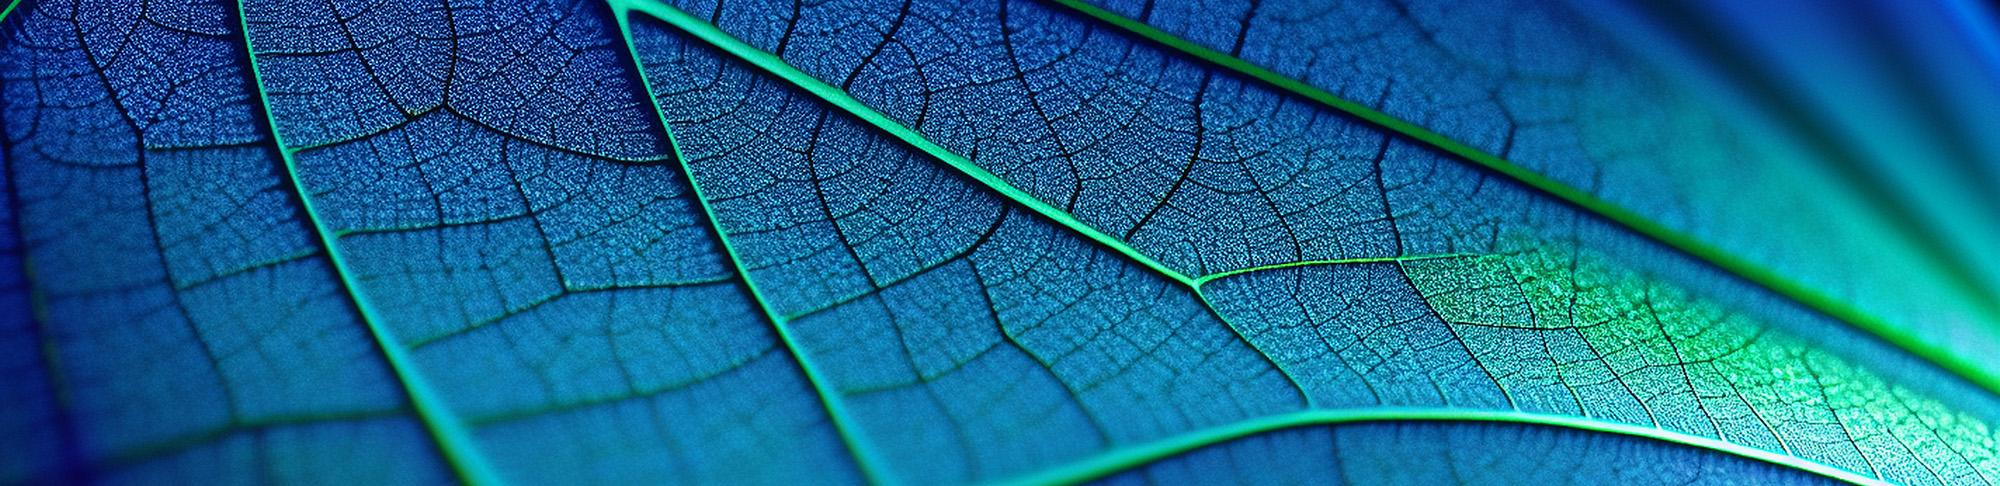 地球日横幅在显微镜下显示叶子的纹理